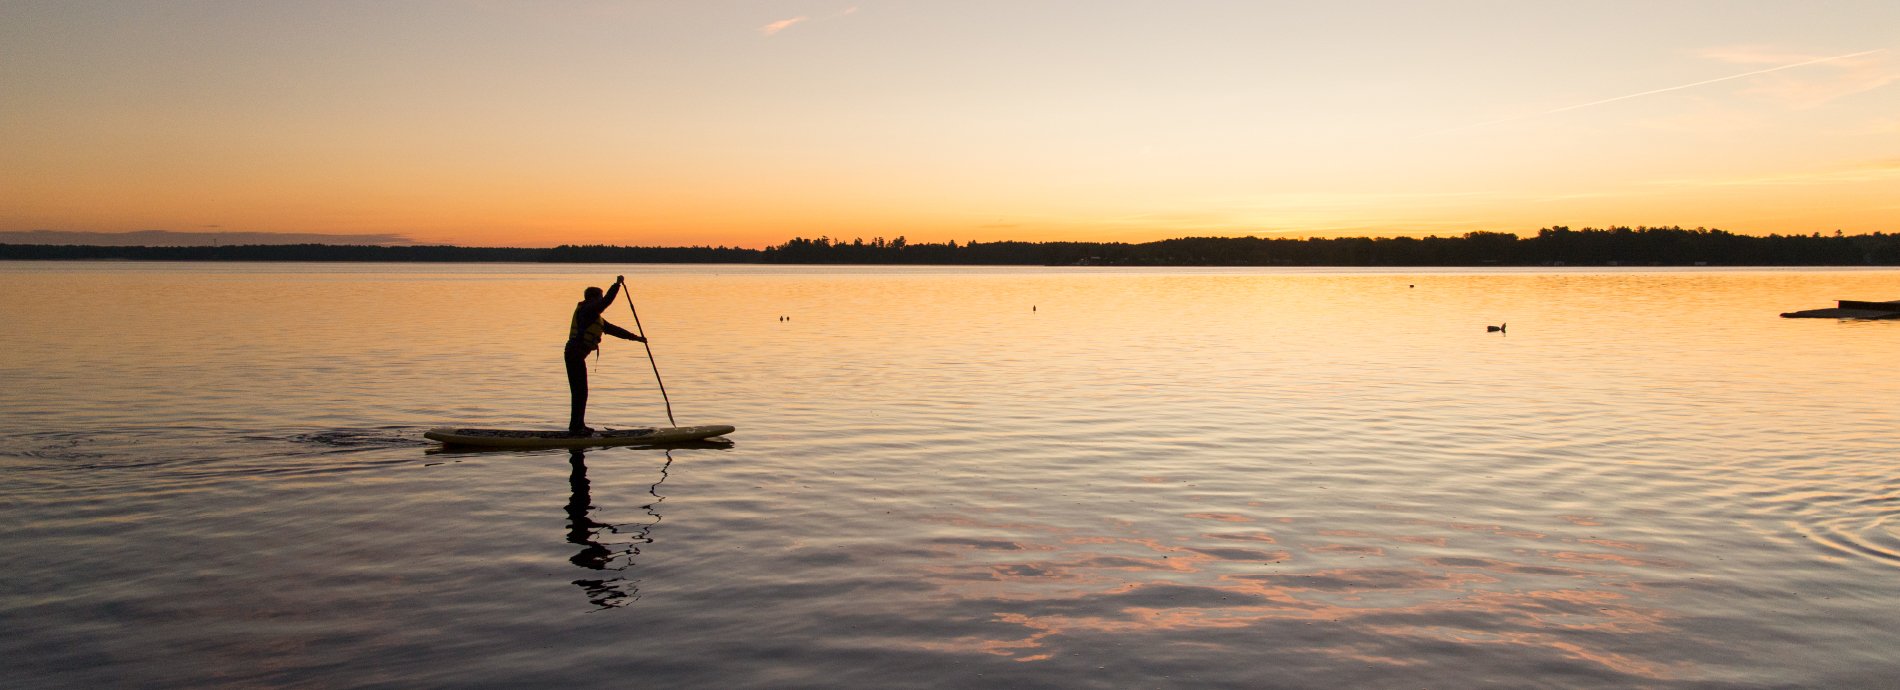 standup paddling sunset